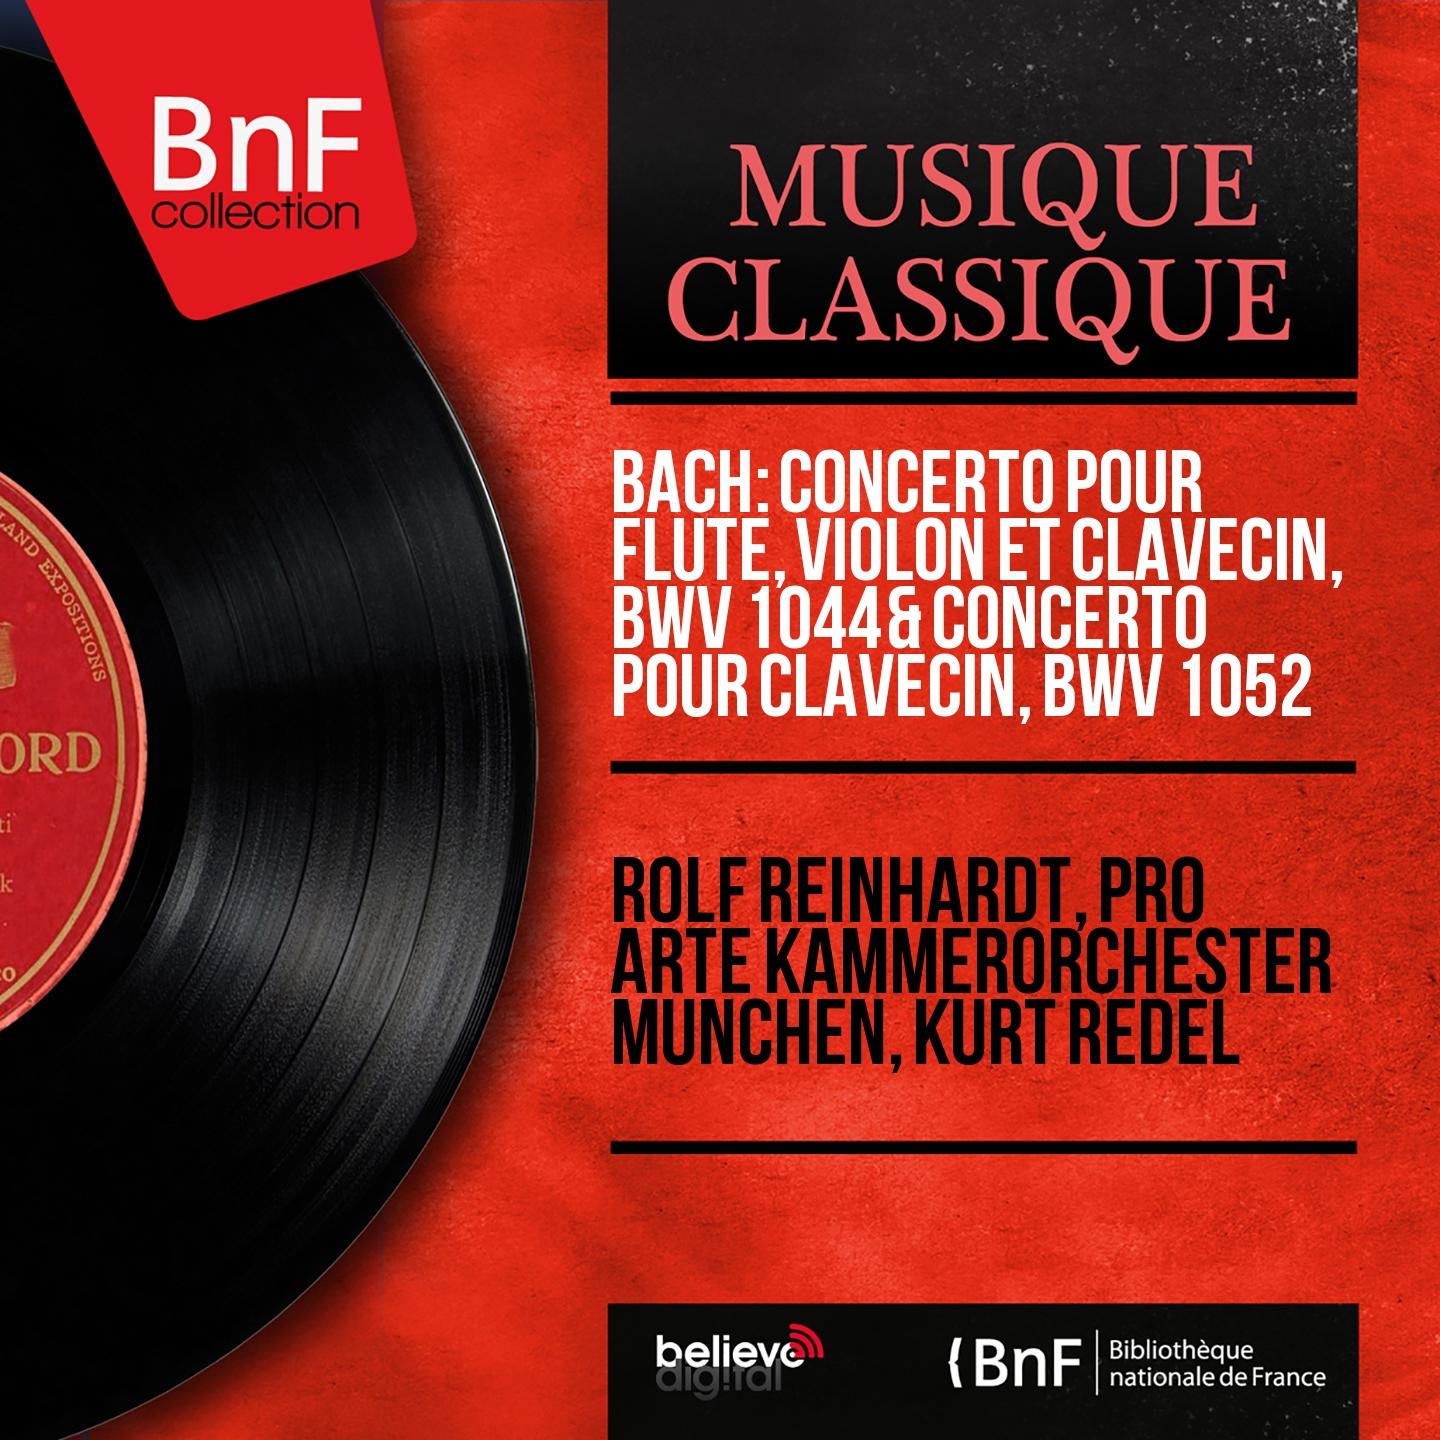 Bach: Concerto pour fl te, violon et clavecin, BWV 1044  Concerto pour clavecin, BWV 1052 Mono Version